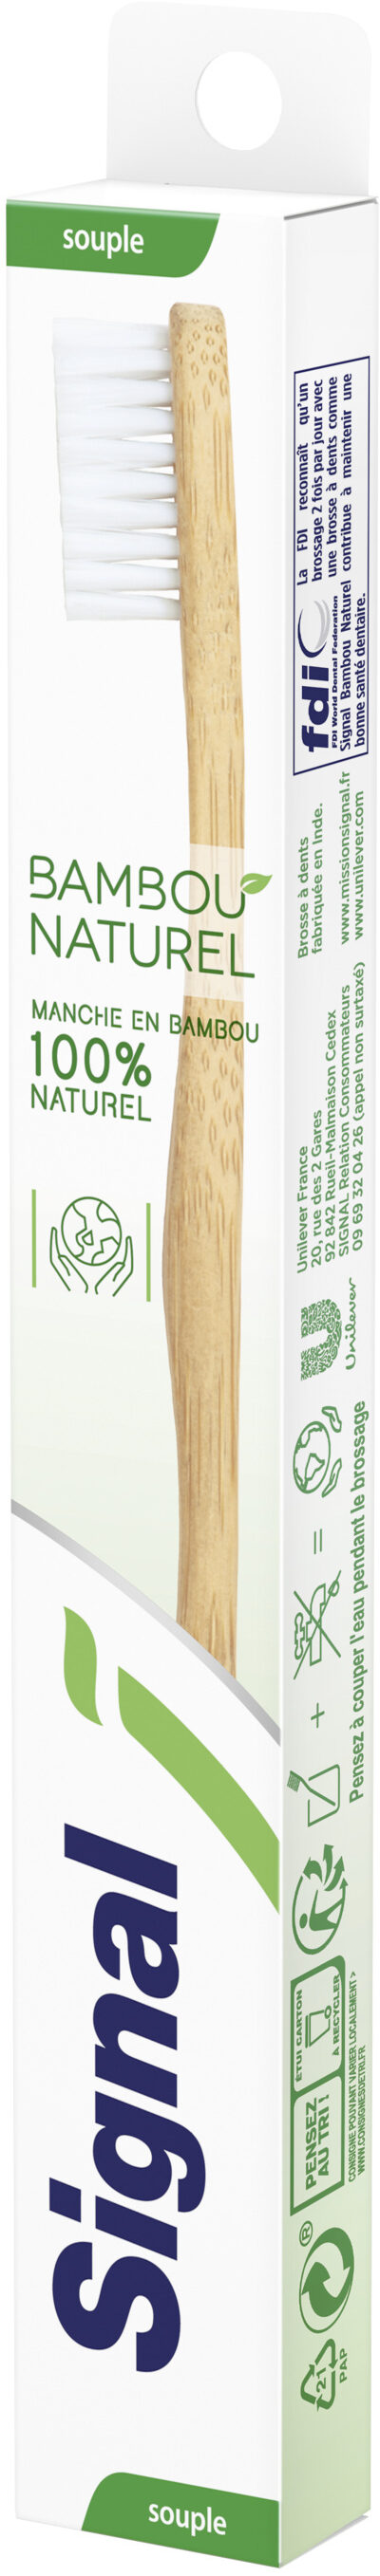 Signal Brosse à Dents Bambou Naturel Souple x1 - Product - fr